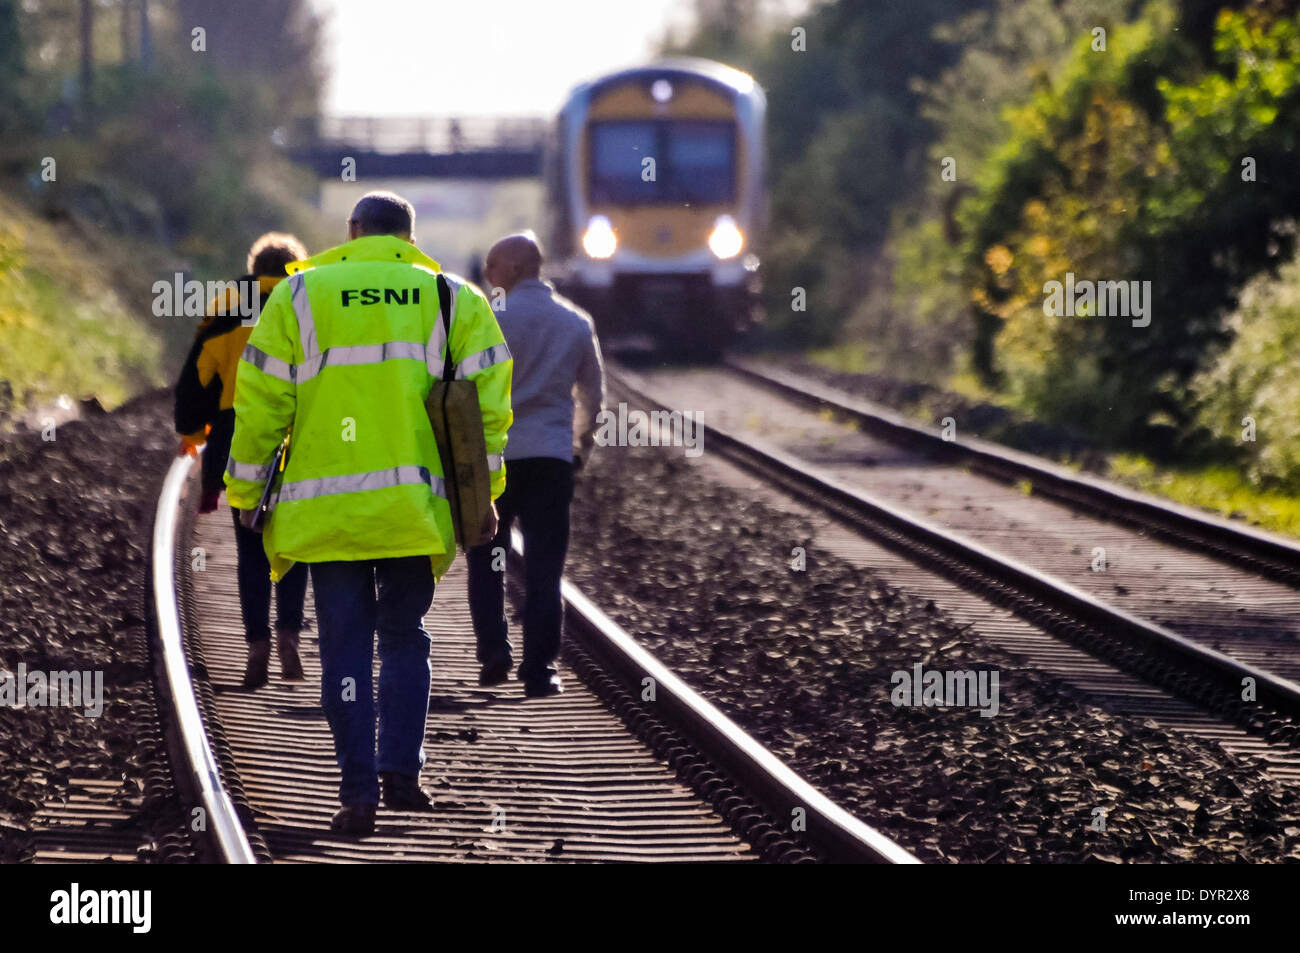 Lurgan, Nordirland. 24. April 2014 - drei forensische Ermittler zu Fuß entlang einer Eisenbahnstrecke an die Stelle, wo eine Person getötet wurde, nachdem sie von einem Zug Kredit getroffen worden waren: Stephen Barnes/Alamy Live News Stockfoto